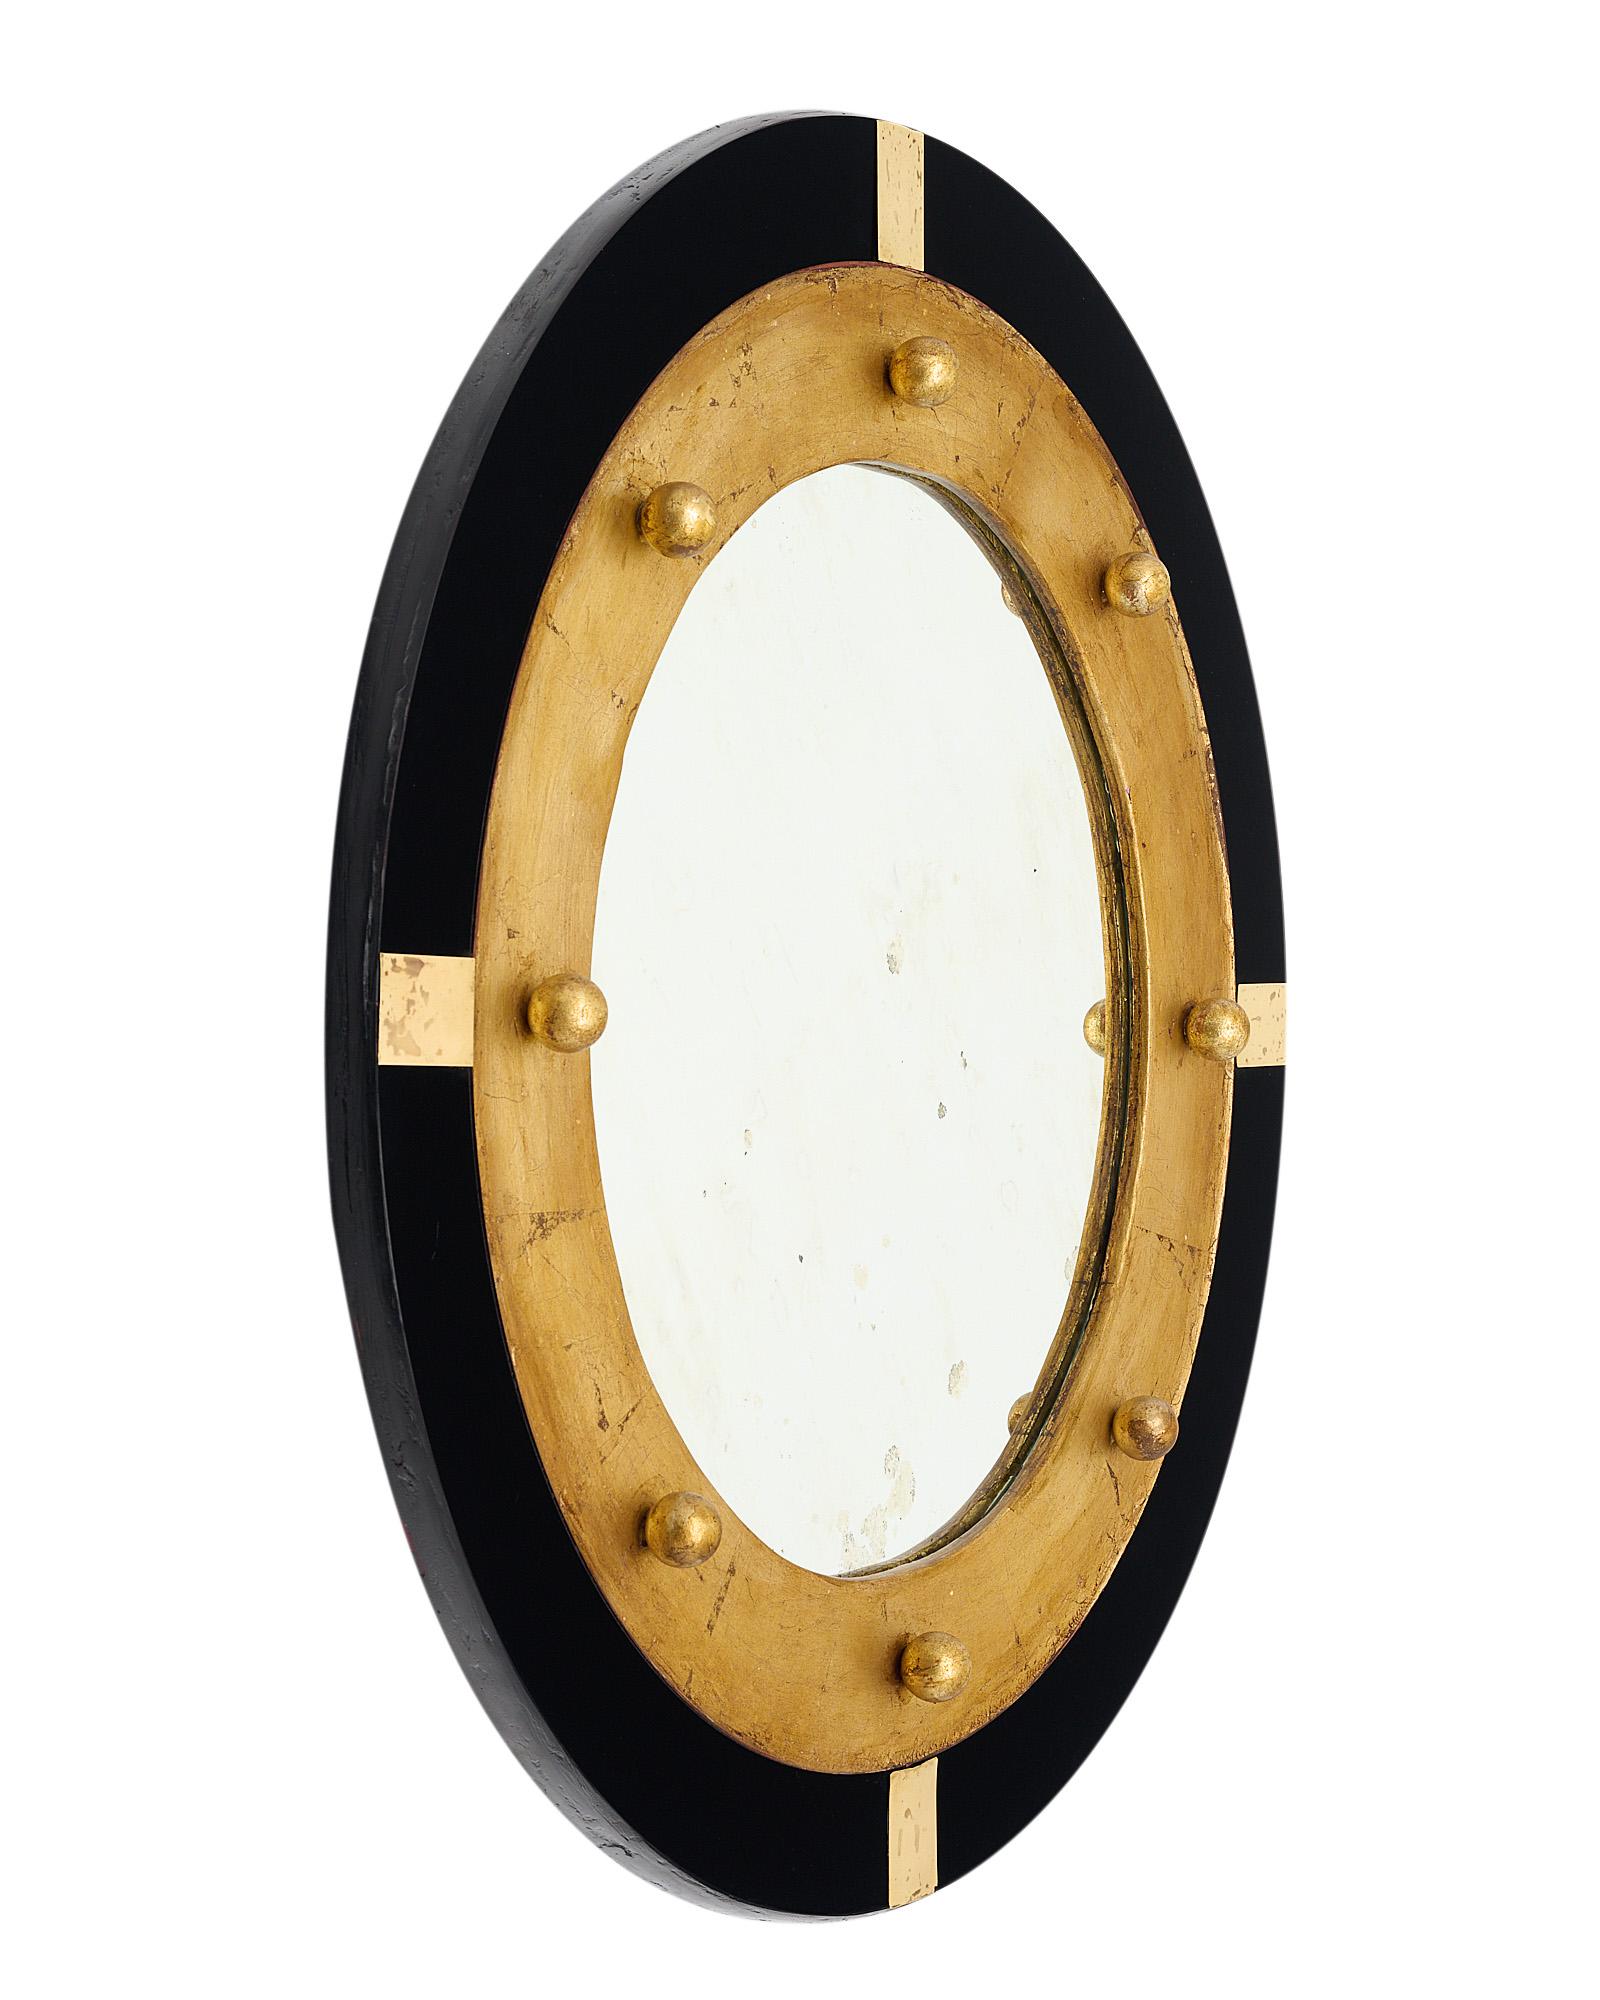 Miroir espagnol vintage avec un miroir central circulaire et une structure en bois. Cette pièce présente des feuilles d'or et une belle patine. Elle est encadrée de verre noir et rehaussée de petits fleurons sphériques dorés et d'éléments en laiton.